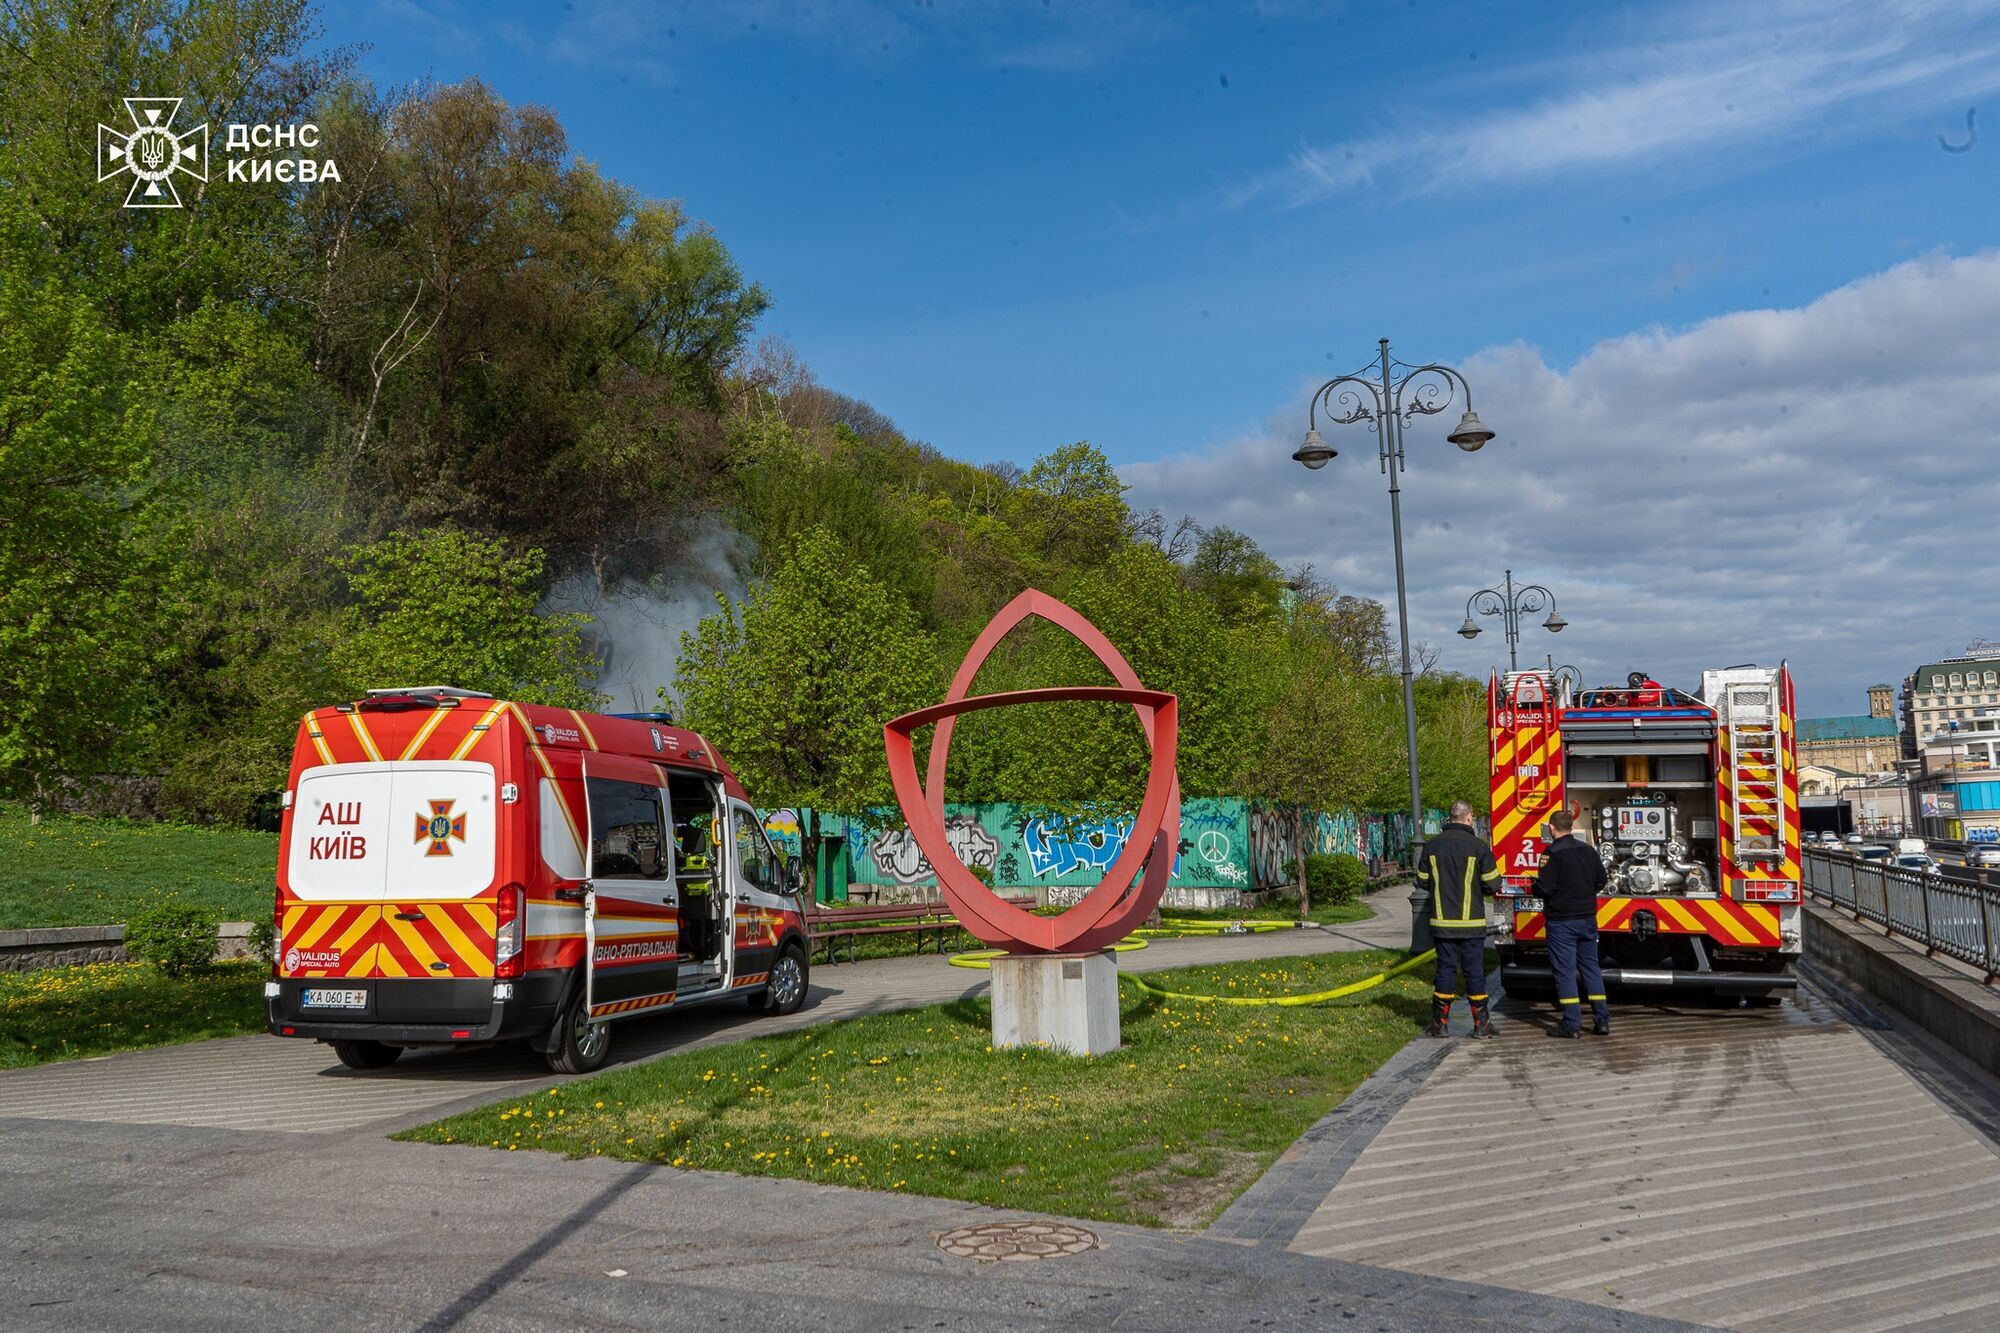 У Києві на Подолі біля пам’ятника Магдебурзькому праву сталась пожежа. Подробиці і фото